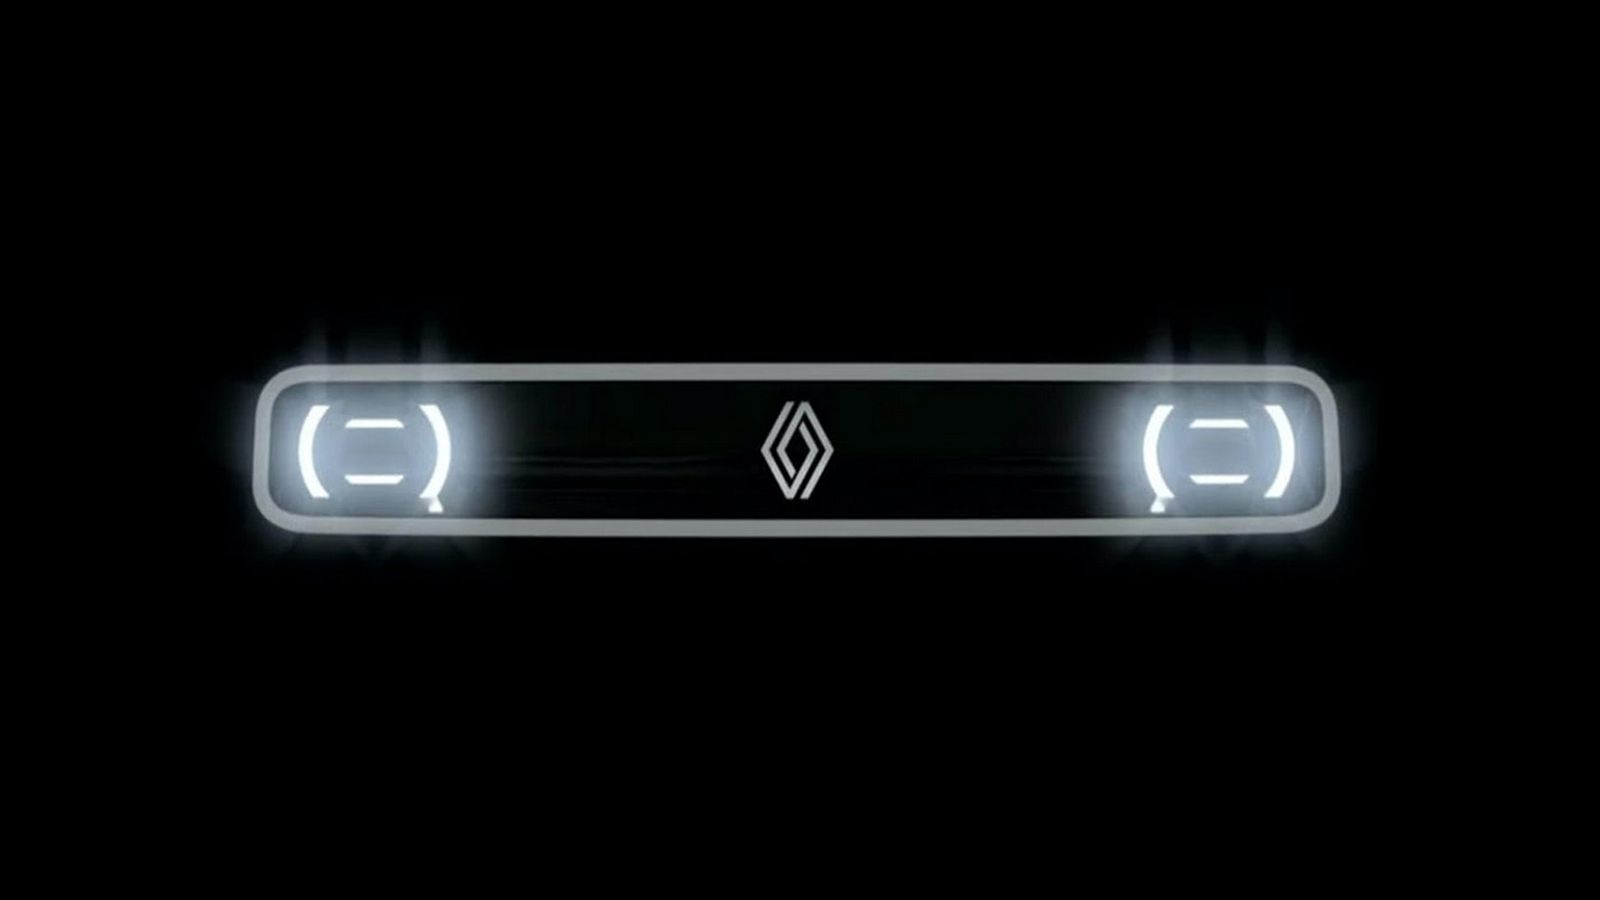 Η αισθητική του Renault 4 Van θα είναι ρετρό. Η τεχνολογίες που θα ενσωματώνει, ωστόσο, θα είναι σύγχρονες...